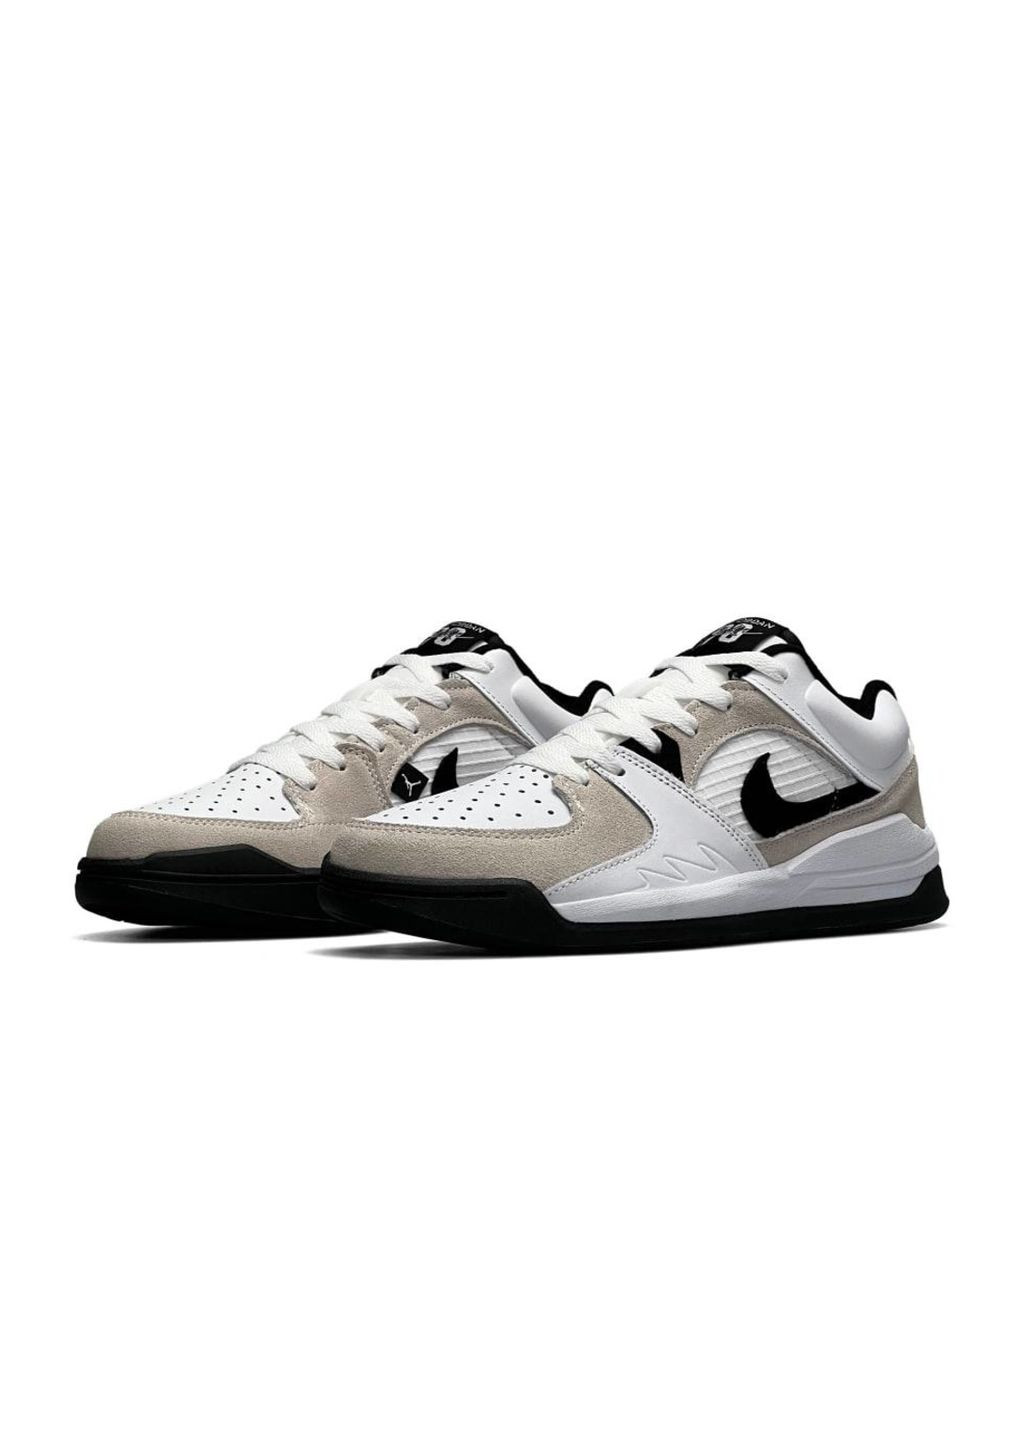 Белые демисезонные кроссовки мужские, вьетнам Nike Air Jordan ‘90 White